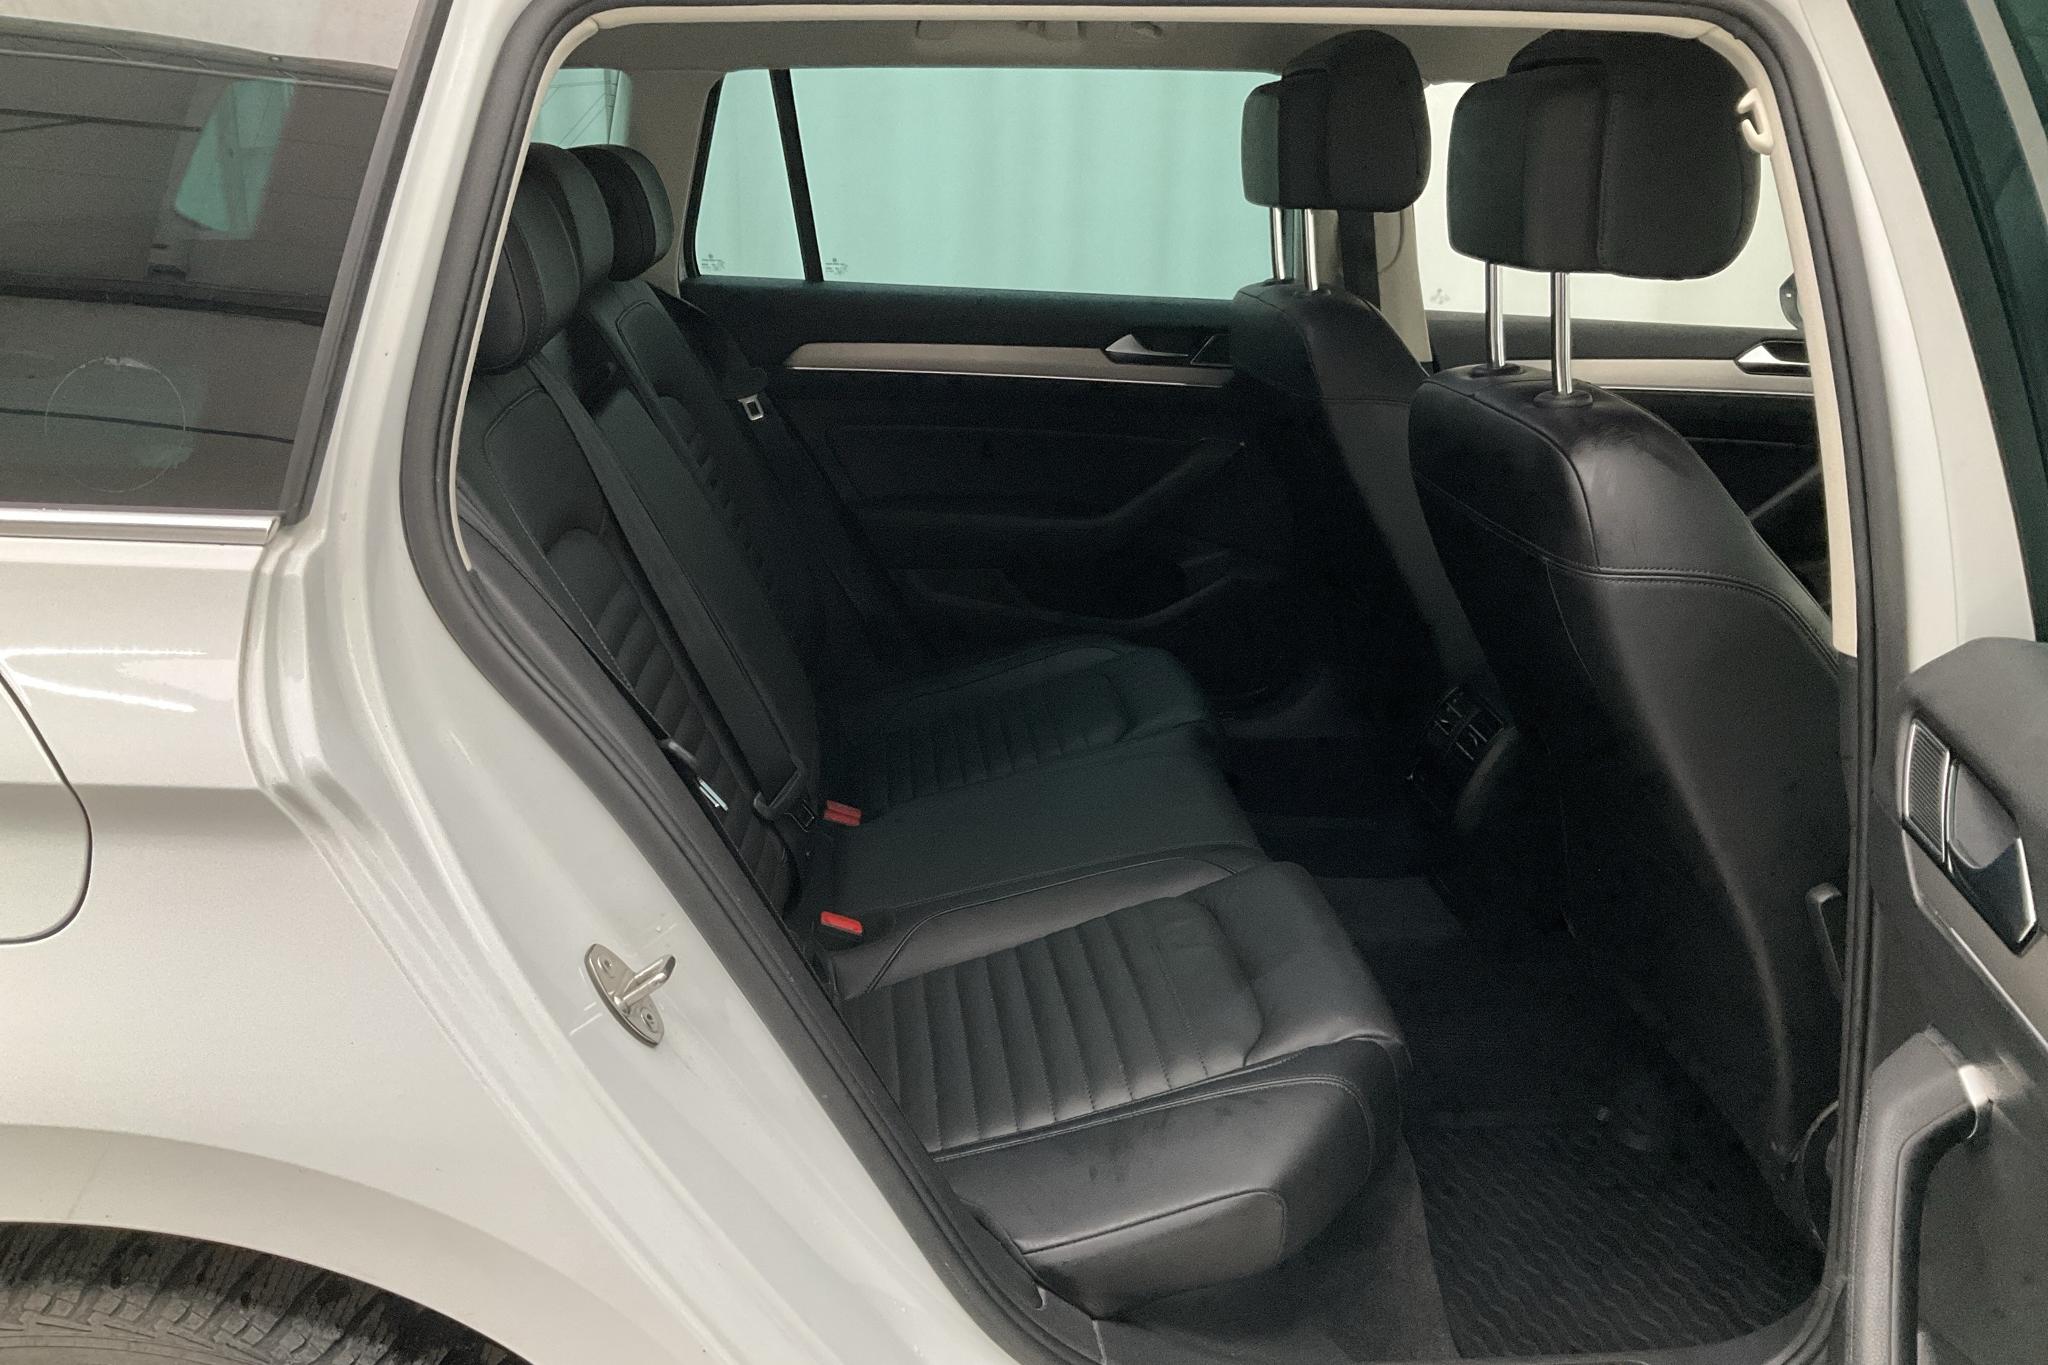 VW Passat 2.0 TDI Sportscombi 4MOTION (190hk) - 20 016 mil - Automat - vit - 2018